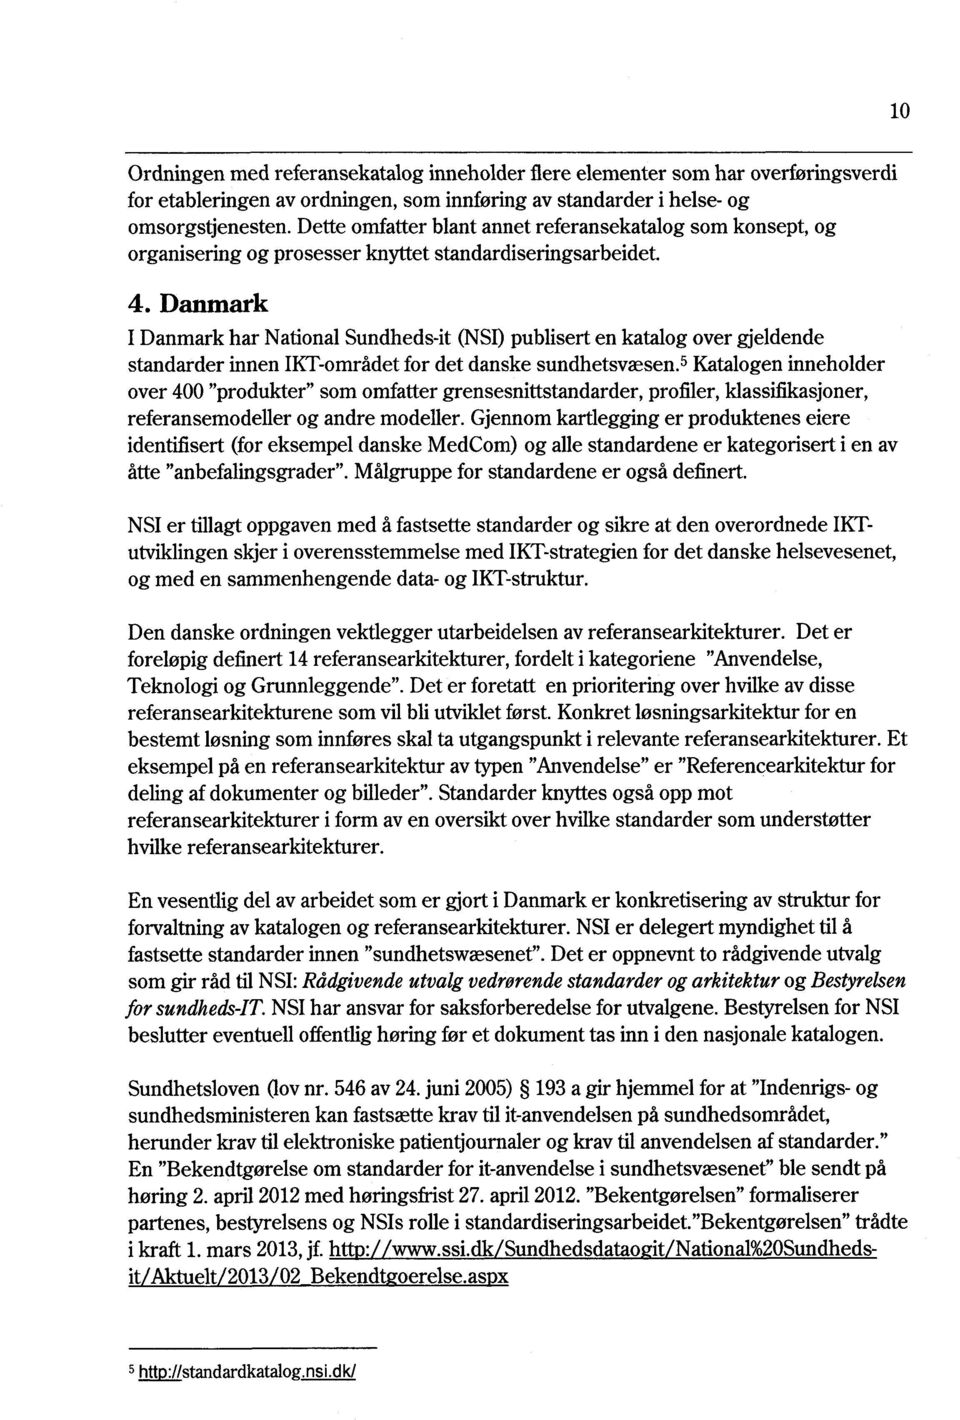 Danmark I Danmark har National Sundheds-it (NSI)publisert en katalog over gjeldende standarder innen IKT-områdetfor det danske sundhetsvæsen.